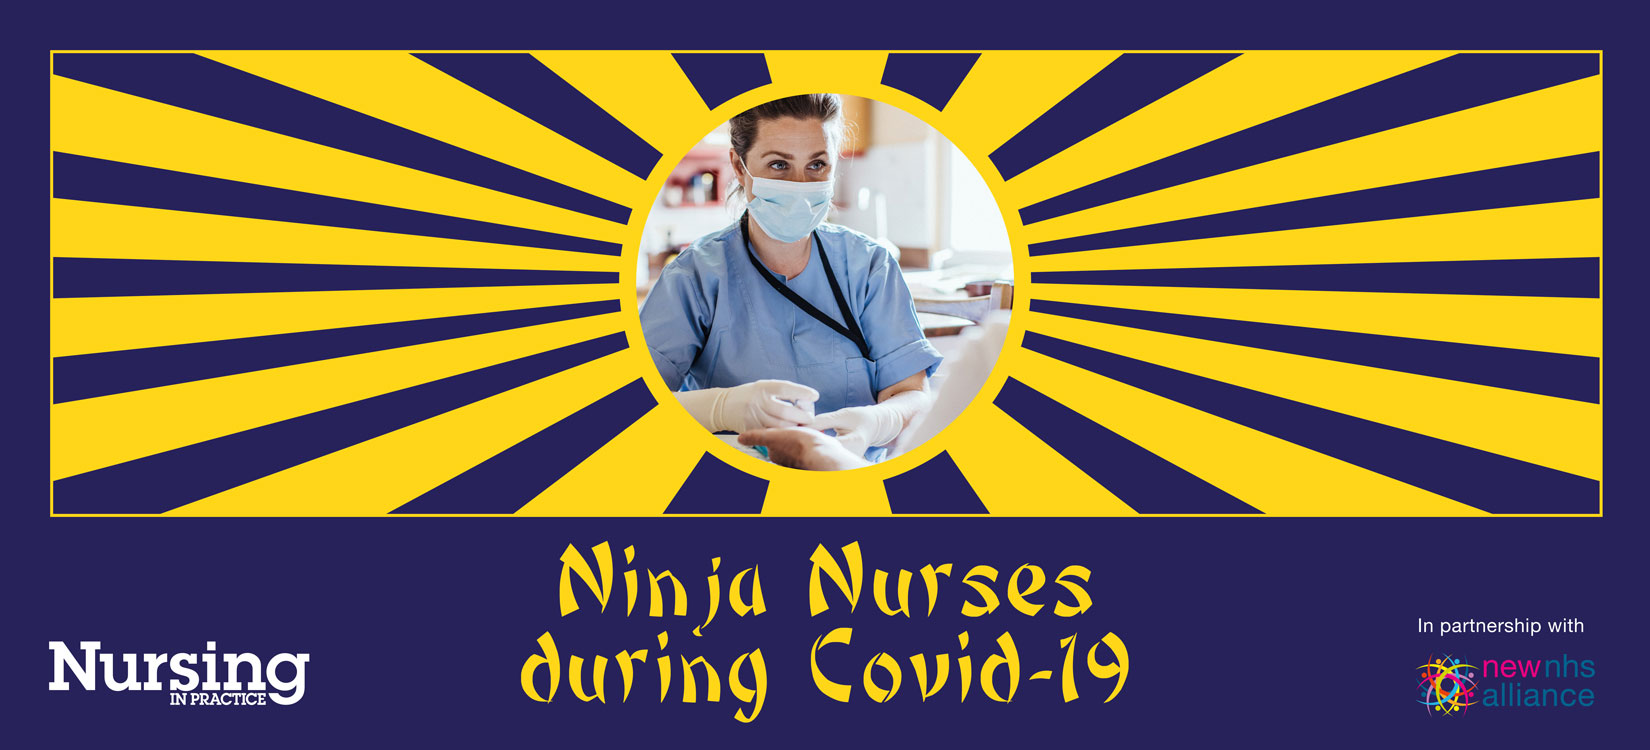 Calling all Ninja Nurses during Covid-19